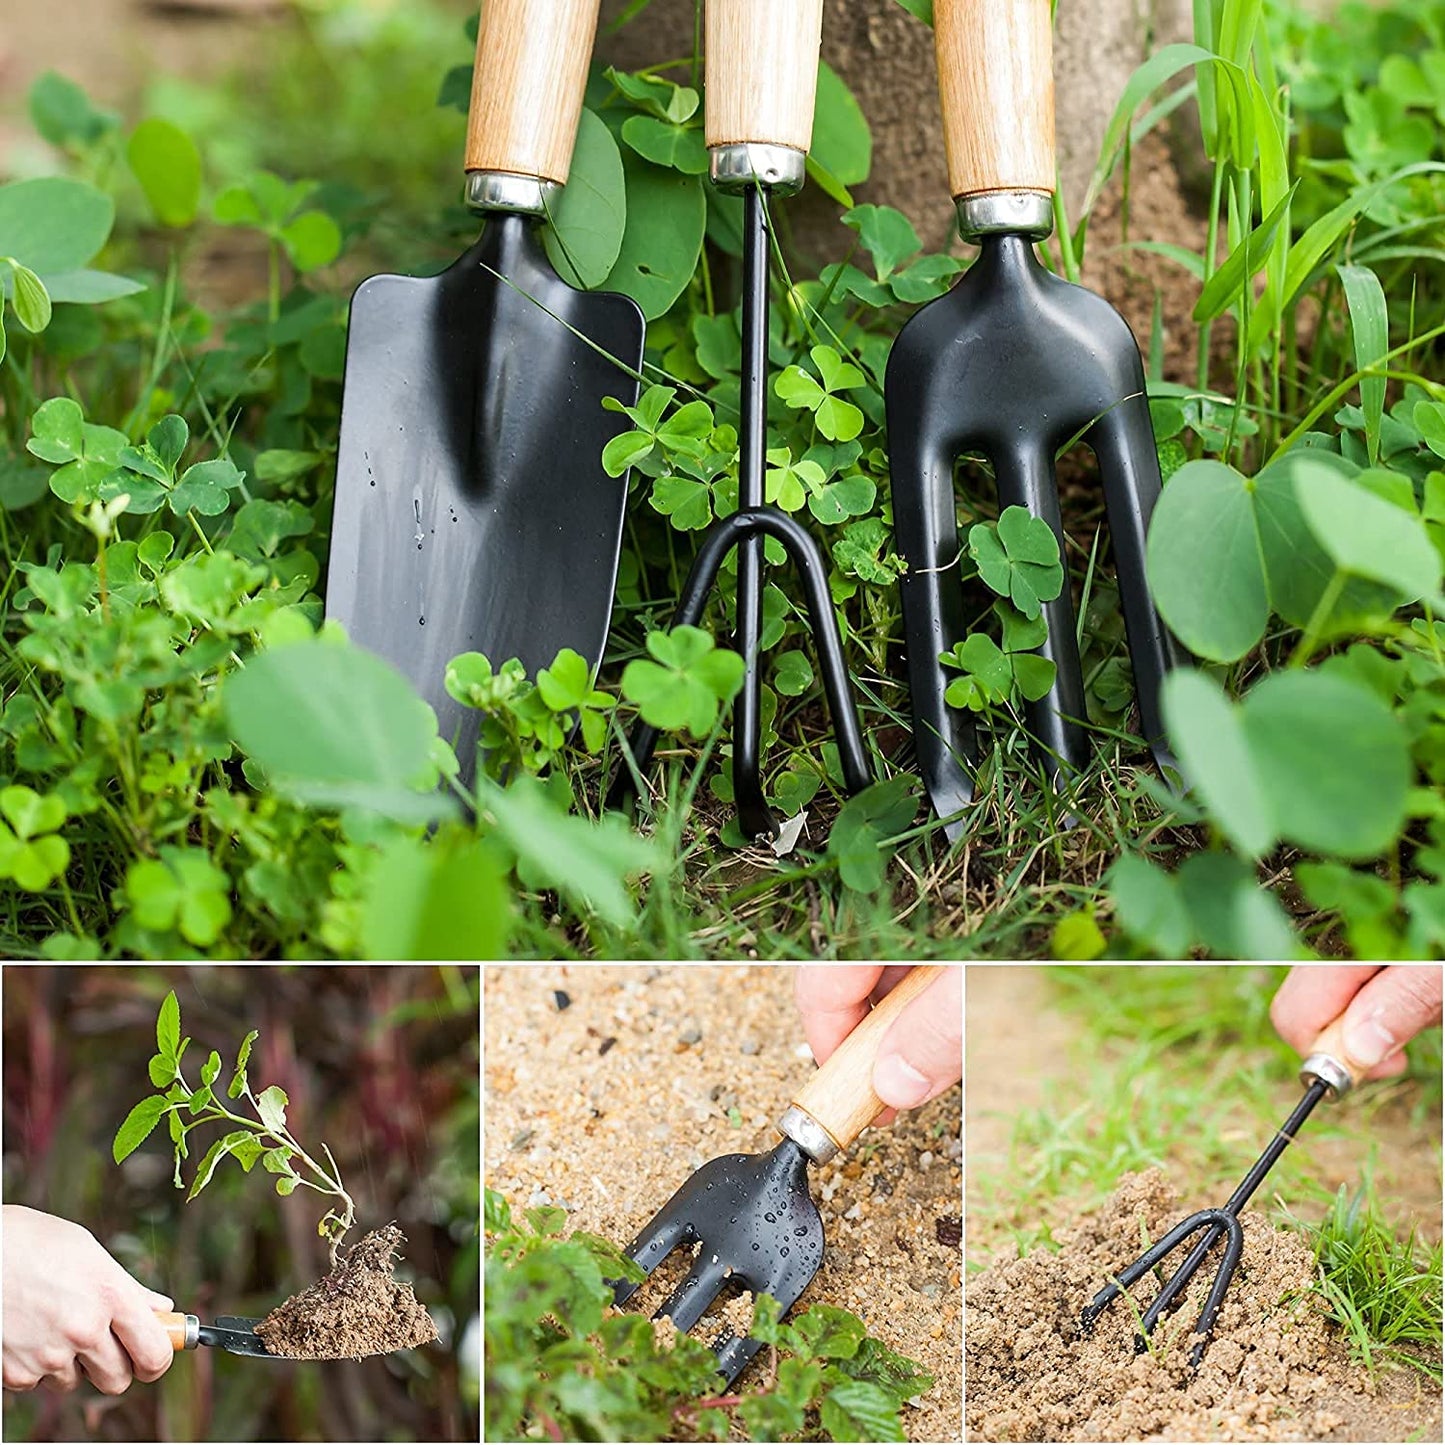 Twist Ties With Garden Tool Set For Gardening